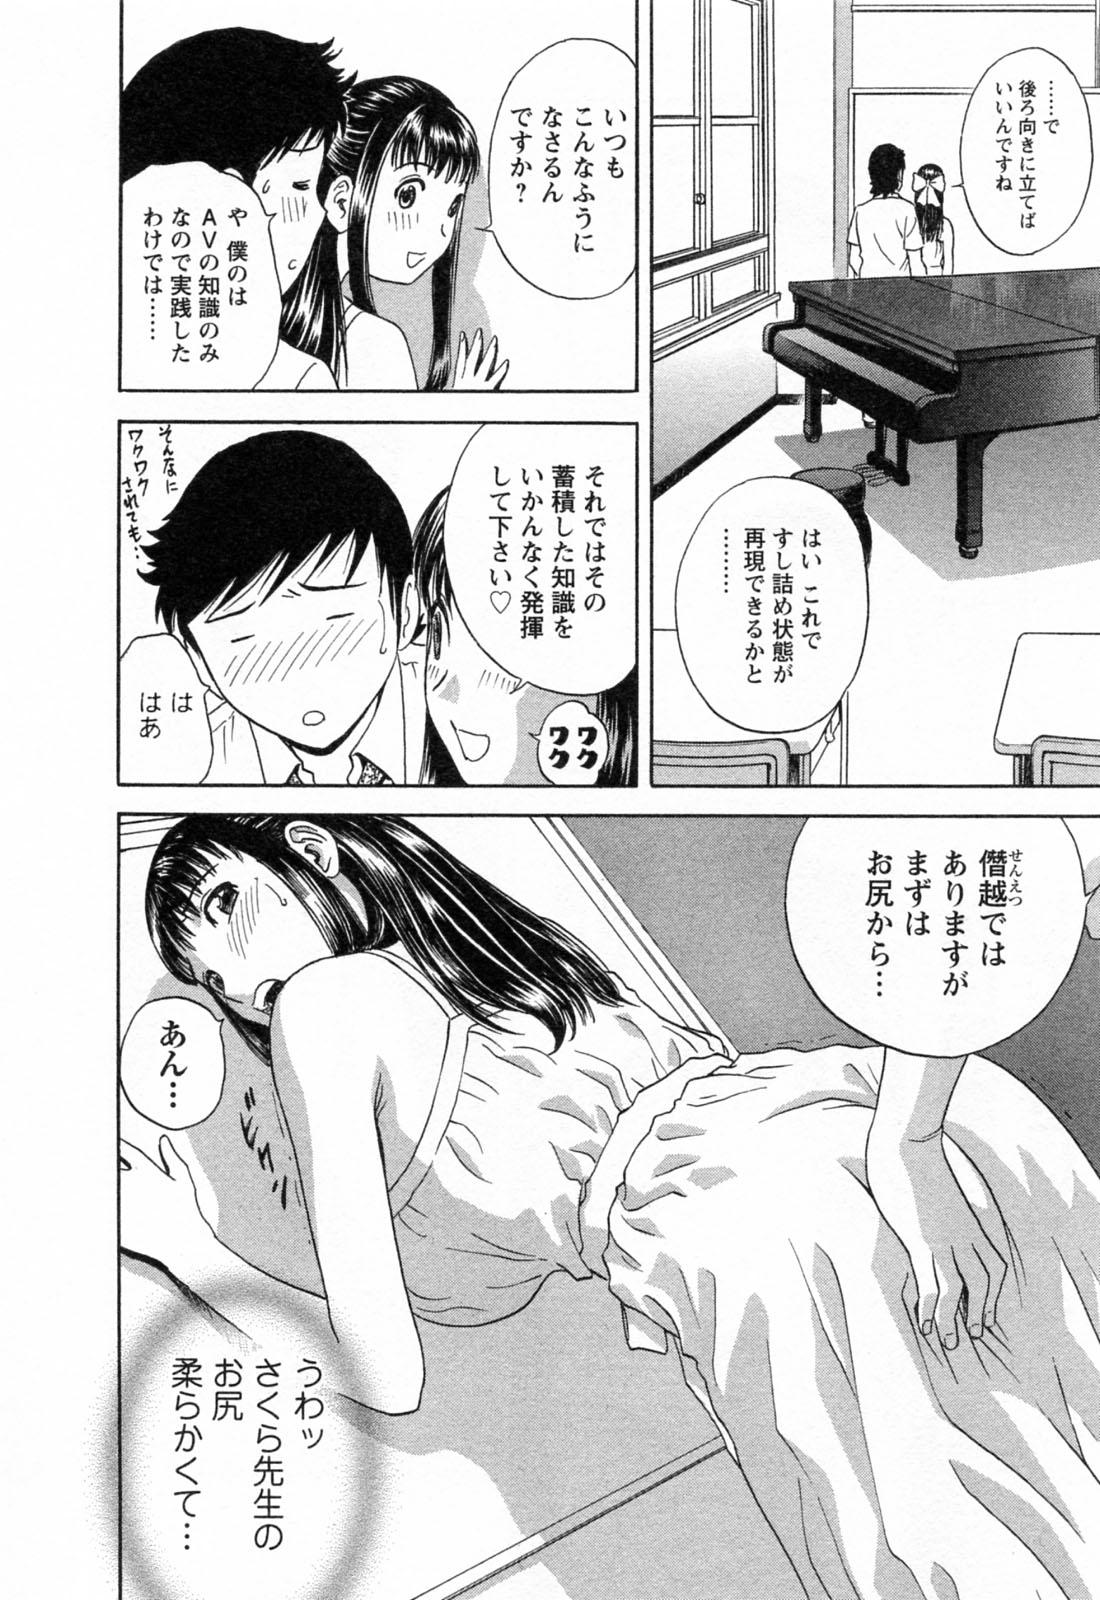 [Hidemaru] Mo-Retsu! Boin Sensei (Boing Boing Teacher) Vol.4 81